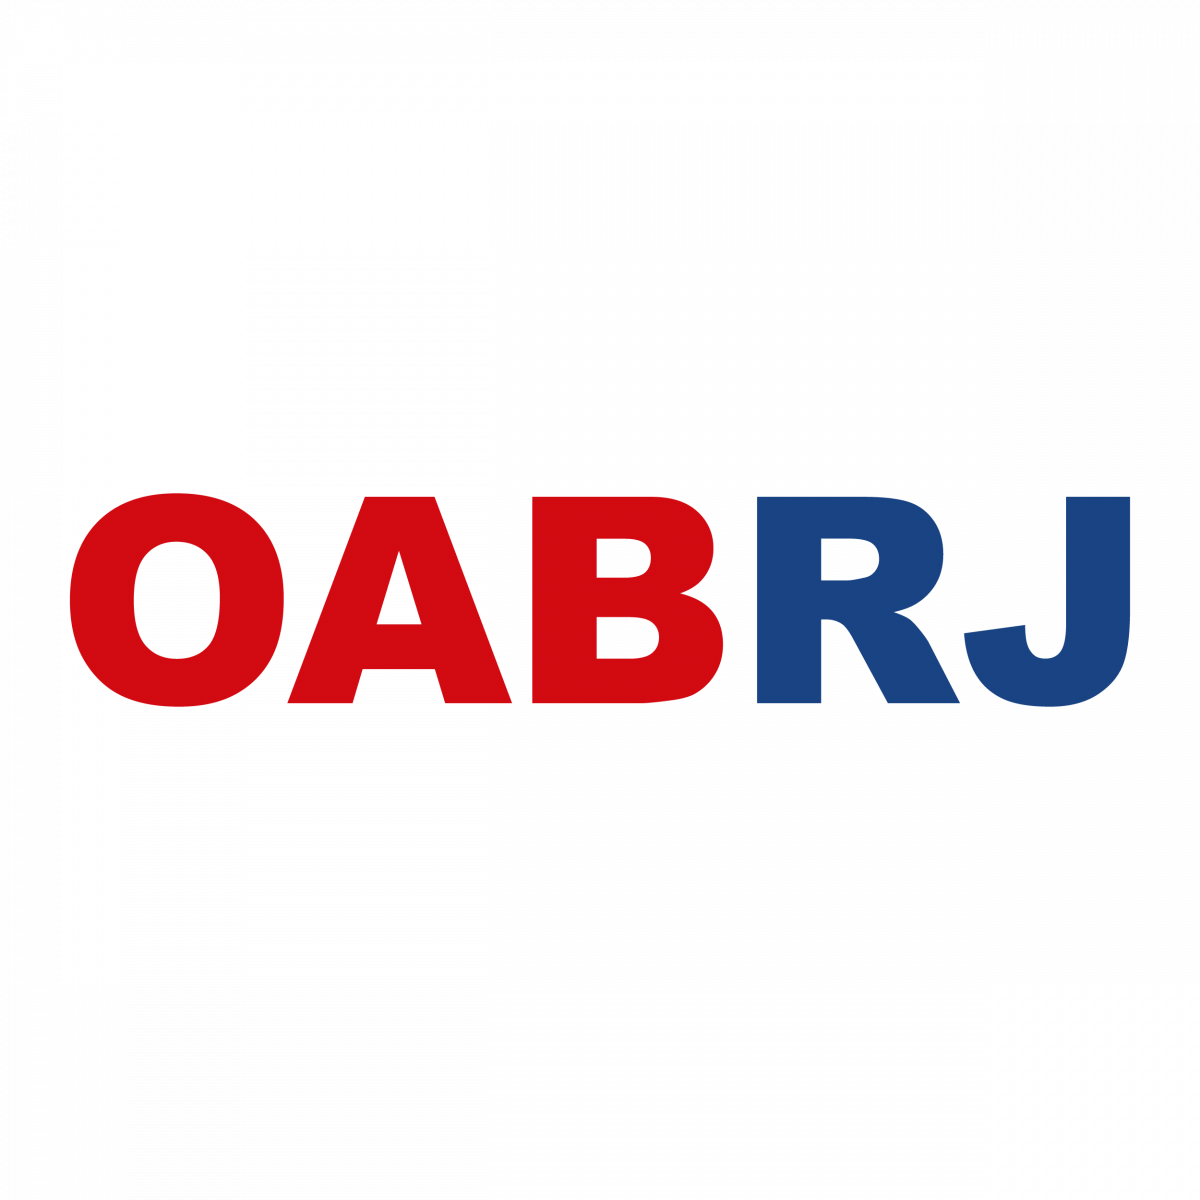 Conselho Seccional da OABRJ reafirma apoio às cotas raciais e de gênero nas eleições da Ordem e da Caixa